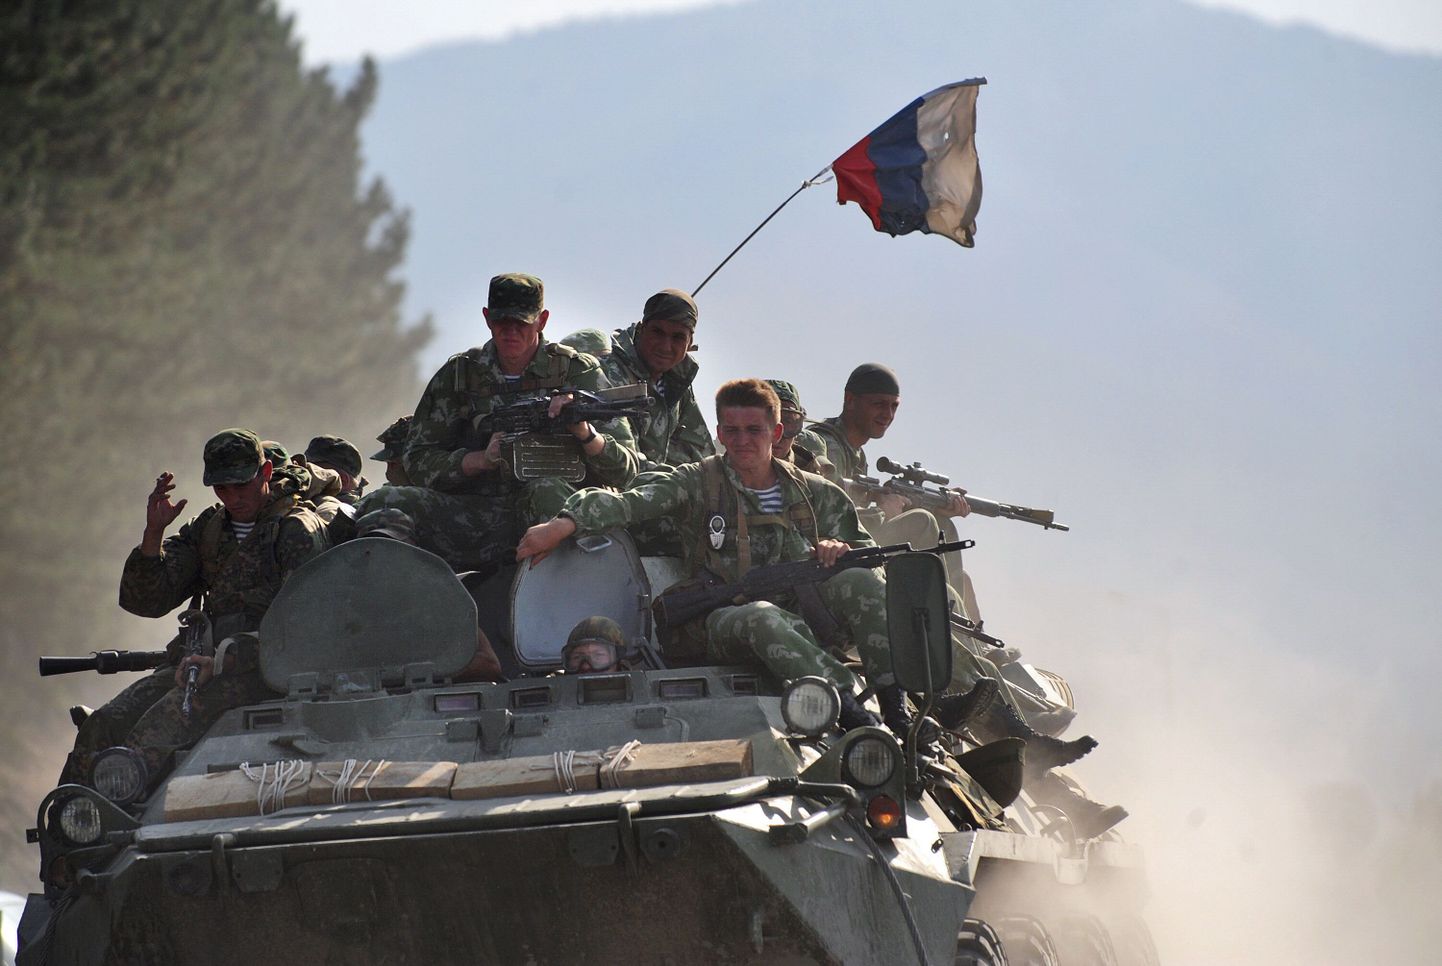 Vene sõjaväelased 2008. aasta 18. augustil Gori lähedal maanteel sõitmas.